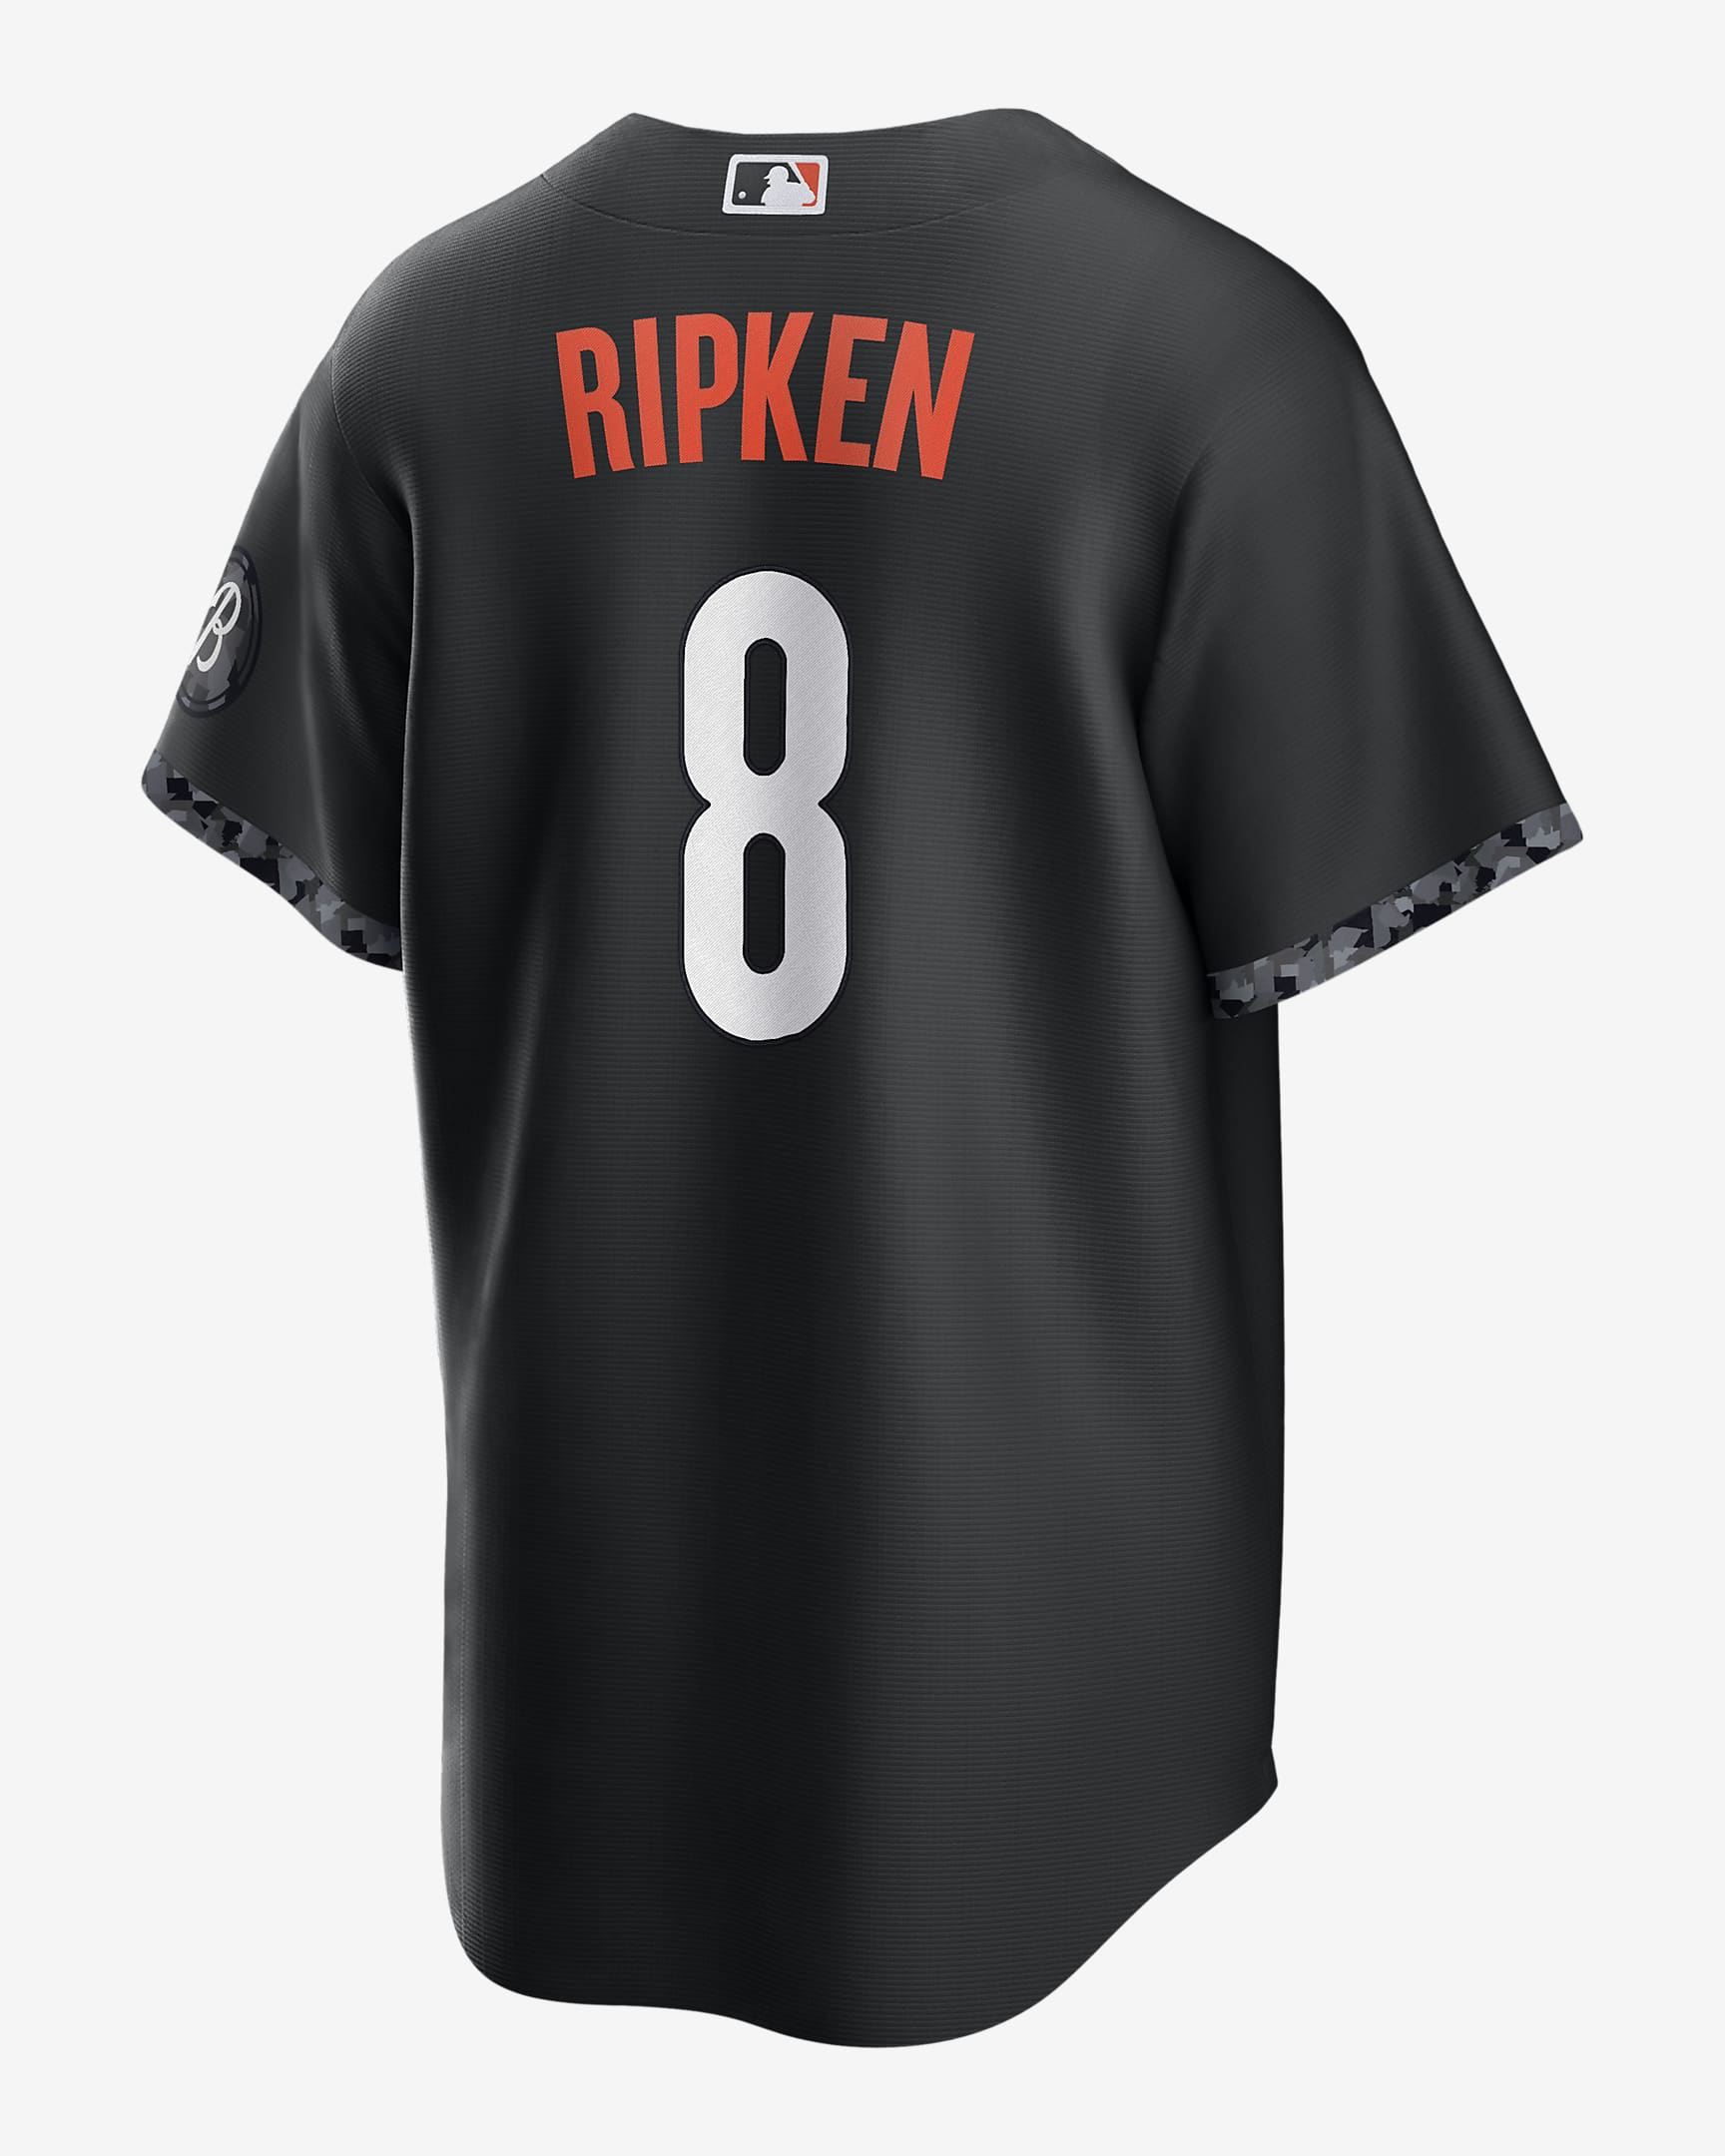 MLB Baltimore Orioles City Connect (Cal Ripken) Men's Replica Baseball